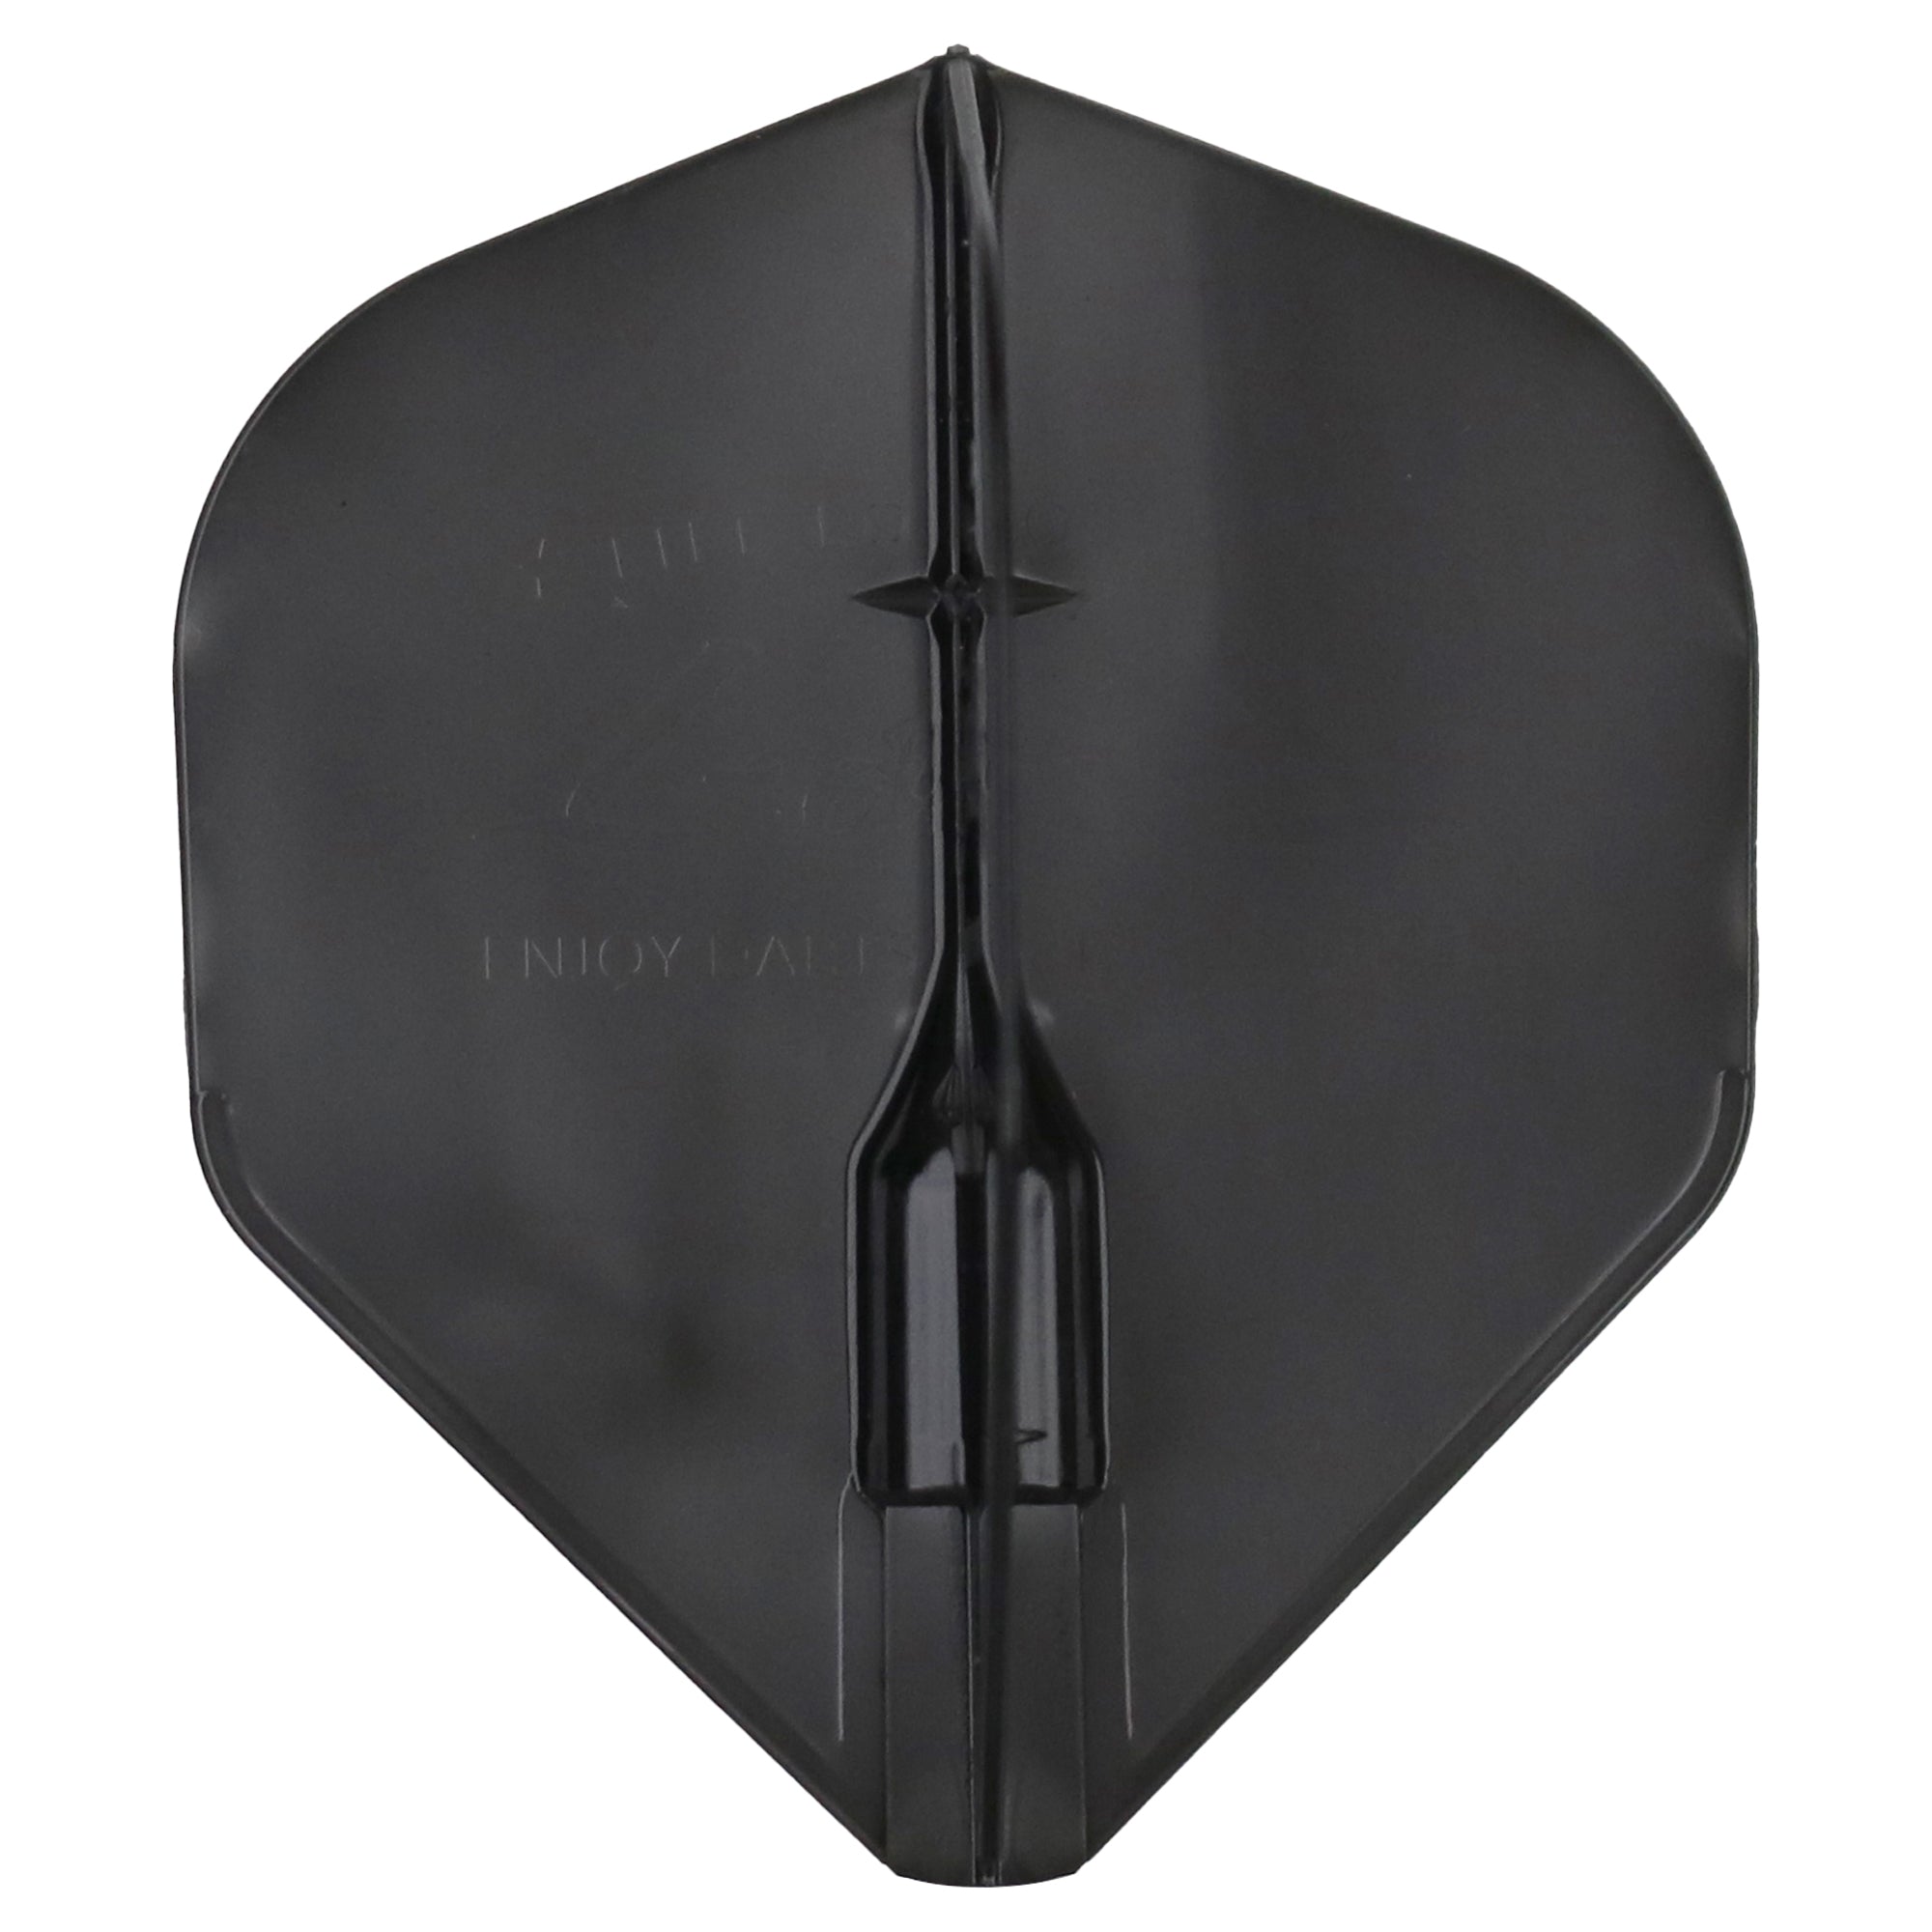 L-Style EZ Fantom Dart Flights - L1 / Standard Black